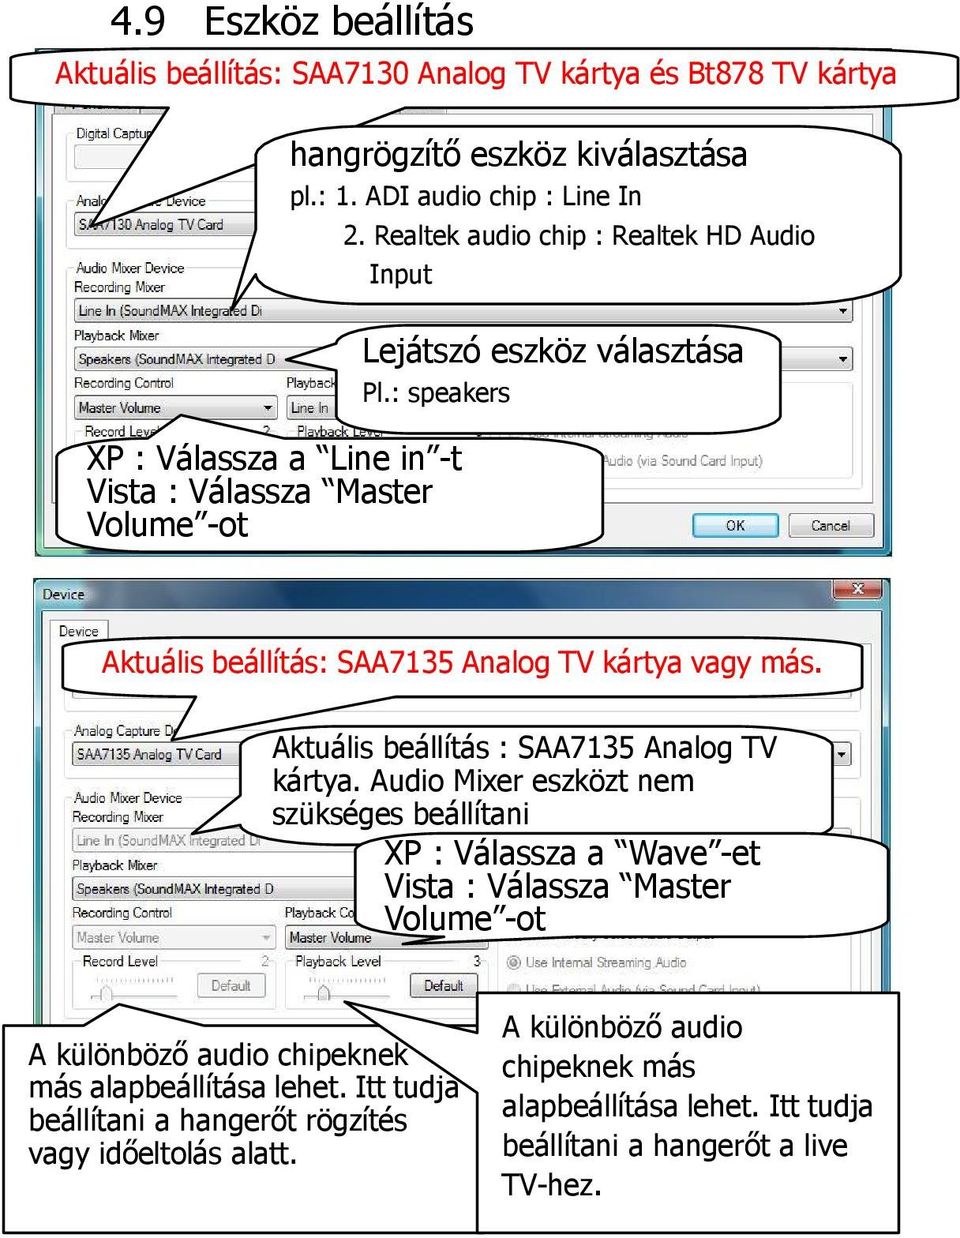 Aktuális beállítás : SAA7135 Analog TV kártya.